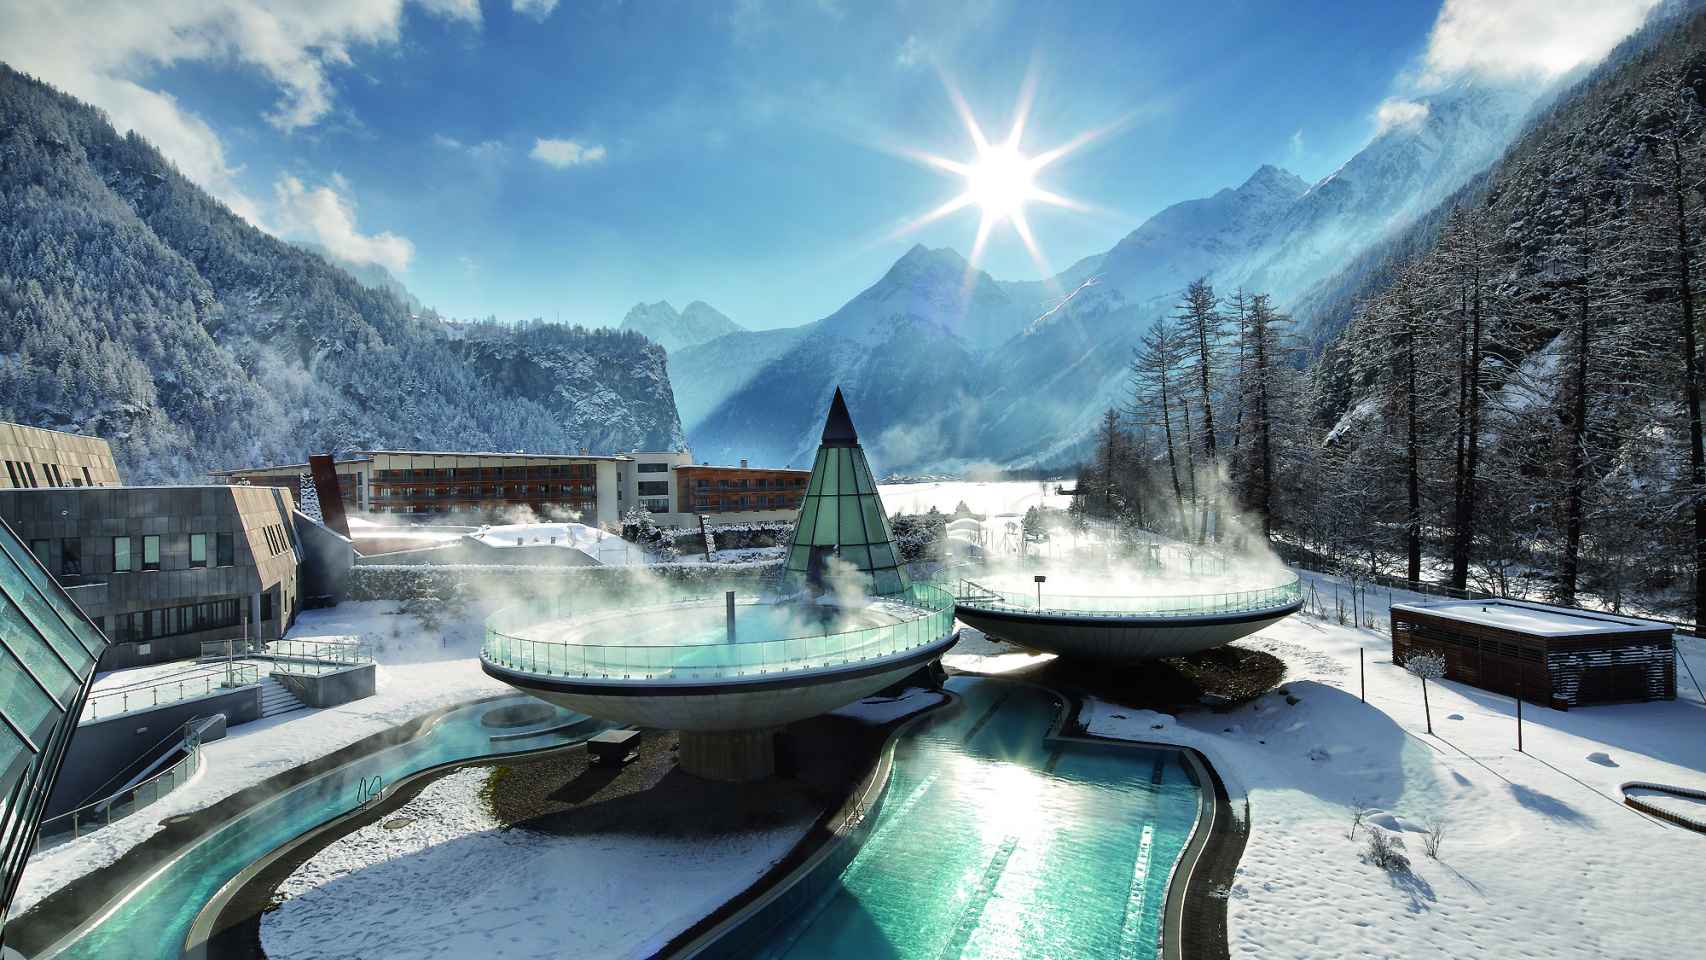 Vista exterior del futurista Aqua Dome,en los Alpes tiroleses.